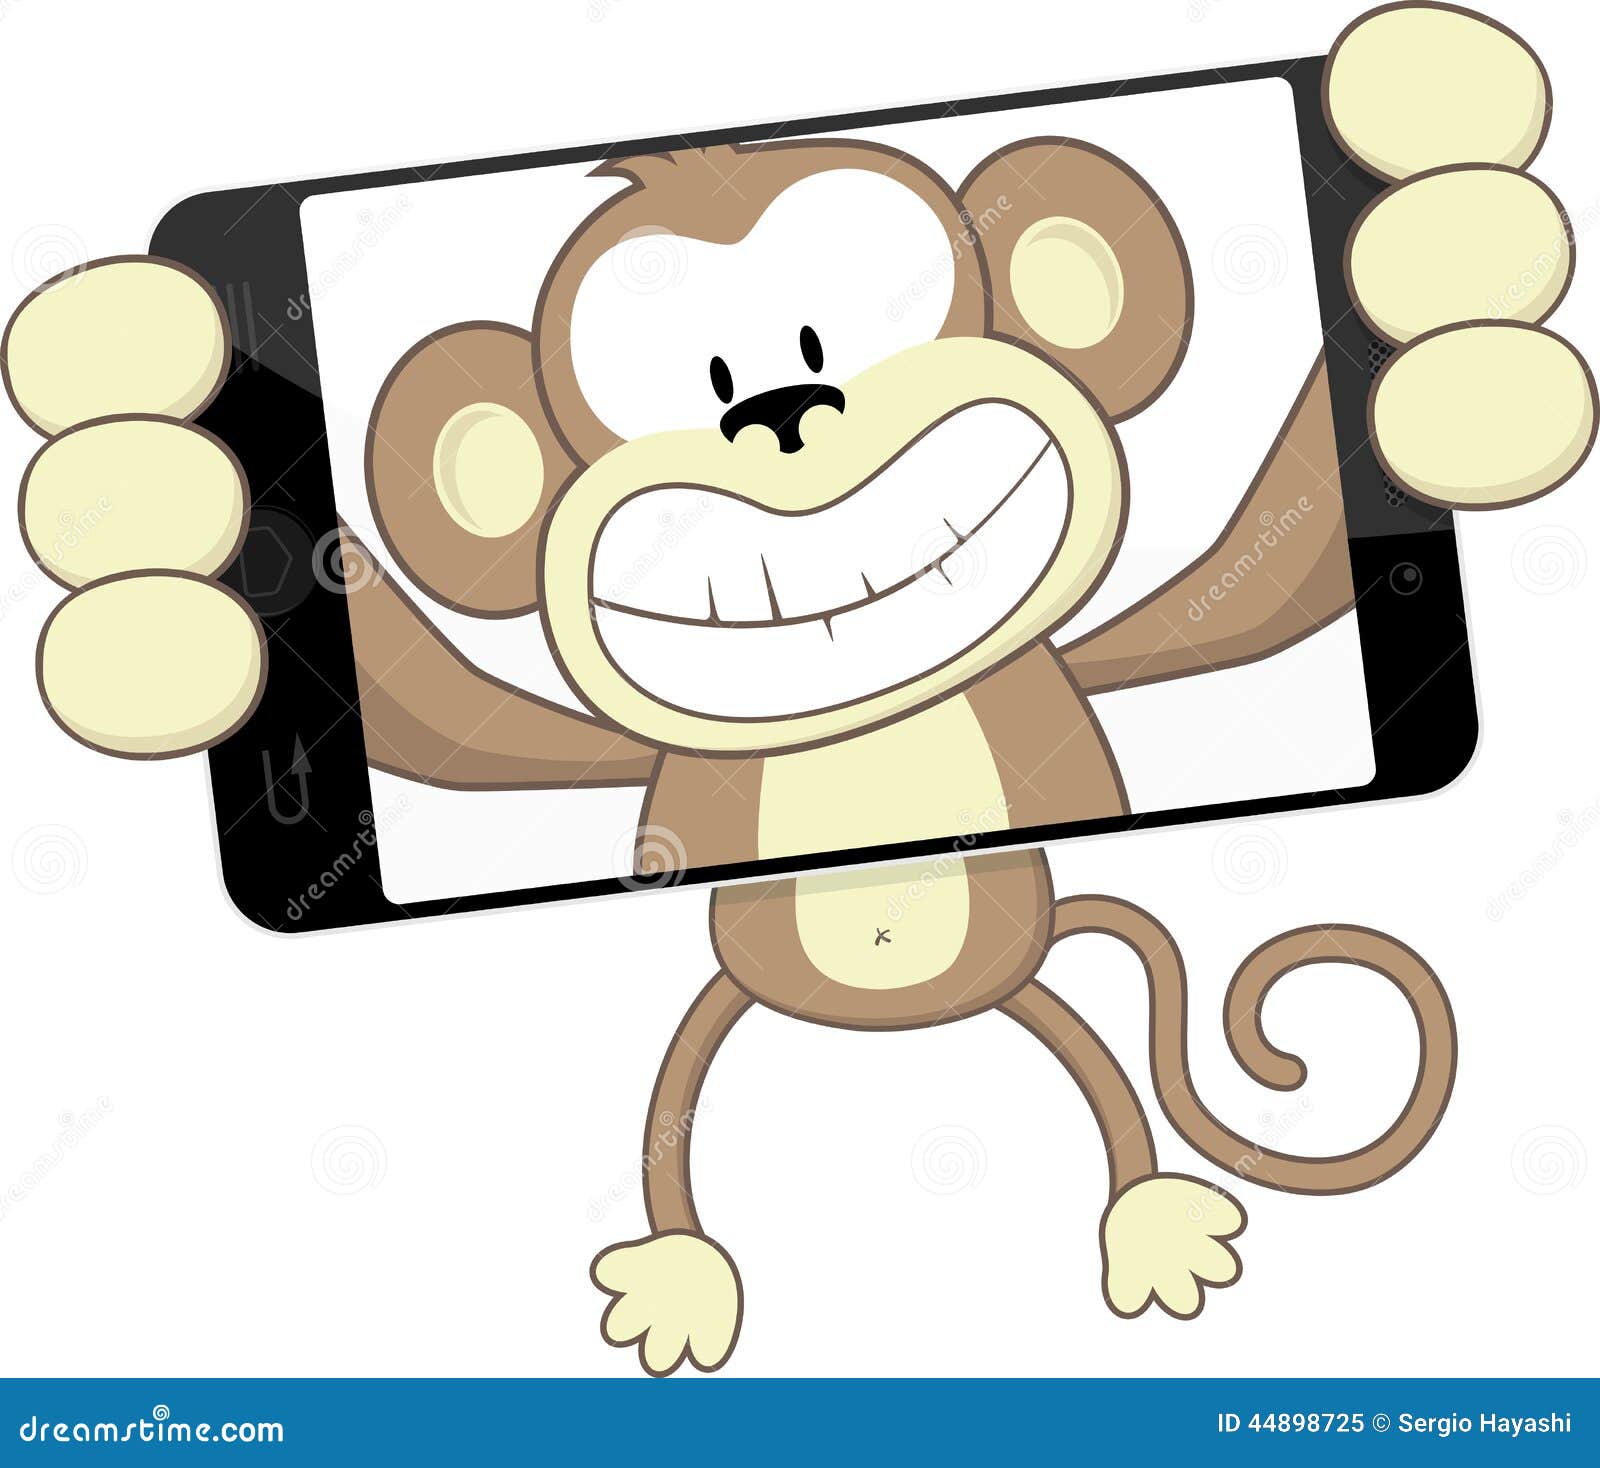 funny monkey clipart - photo #22